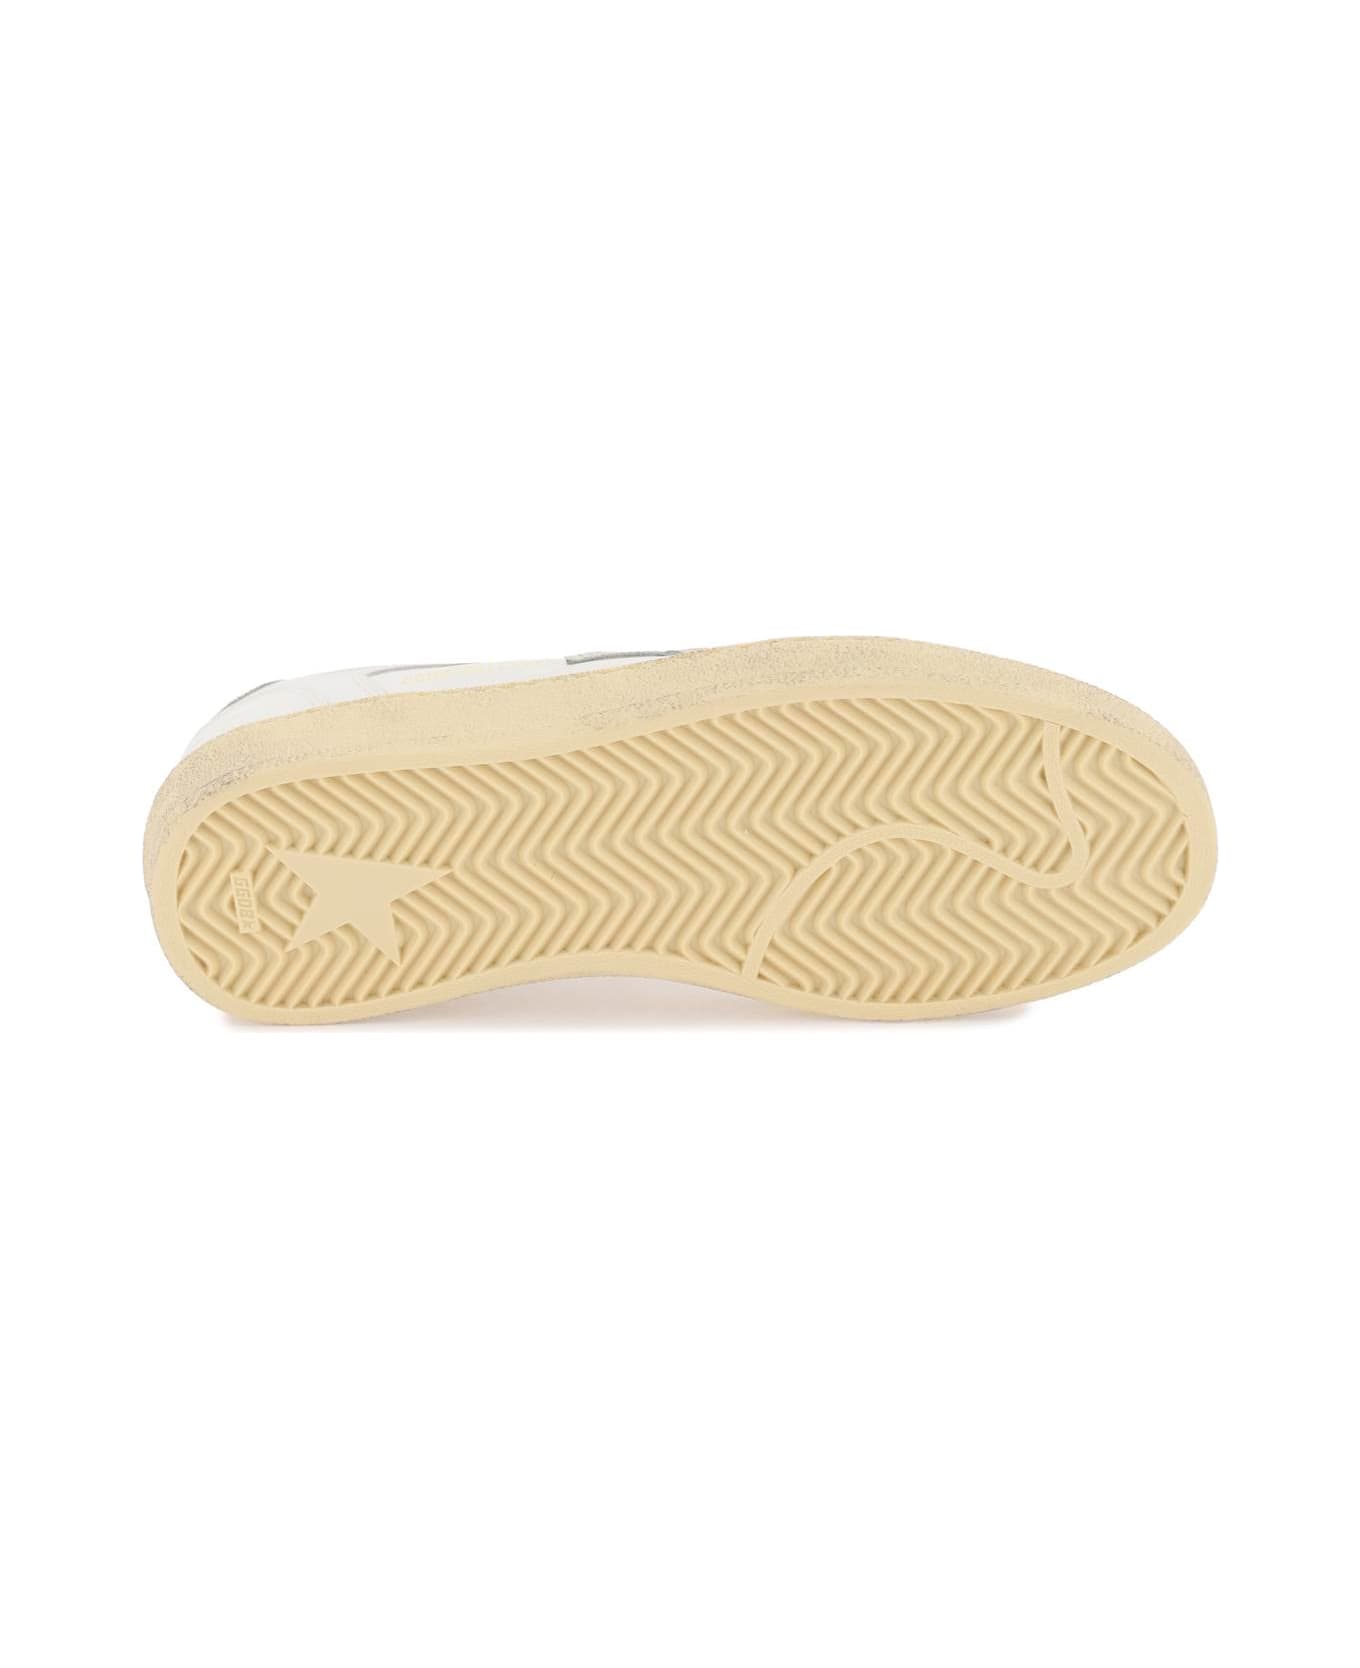 Golden Goose Ball Star Sneakers - WHITE ICE SILVER (White) スニーカー